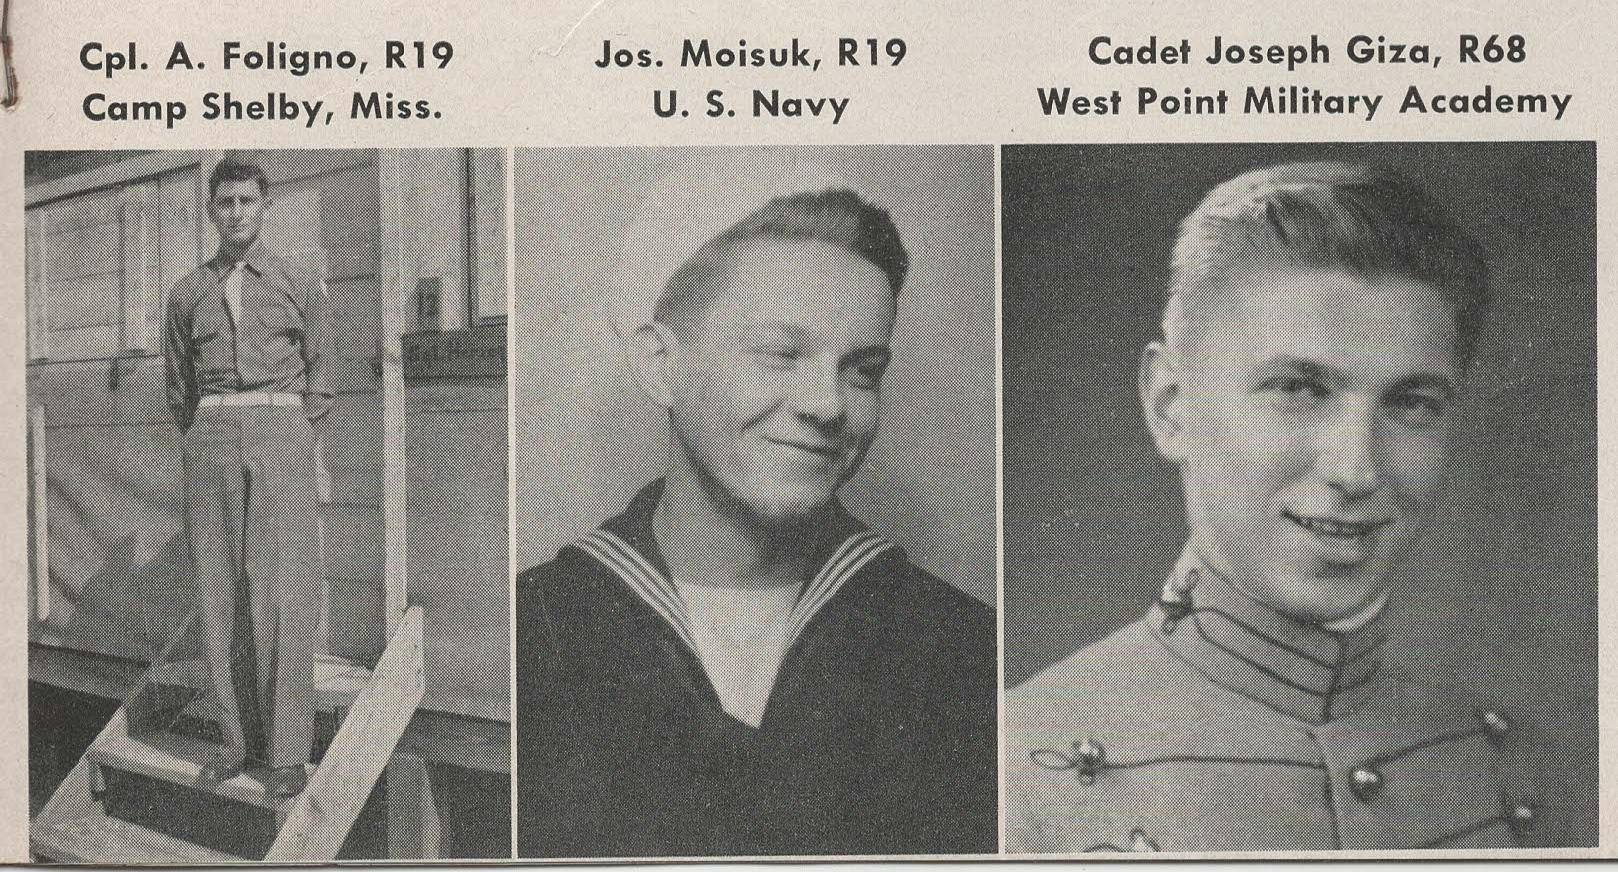 L-R: Cpl. A. Foligno, Jos. Moisuk, Cadet Joseph Giza